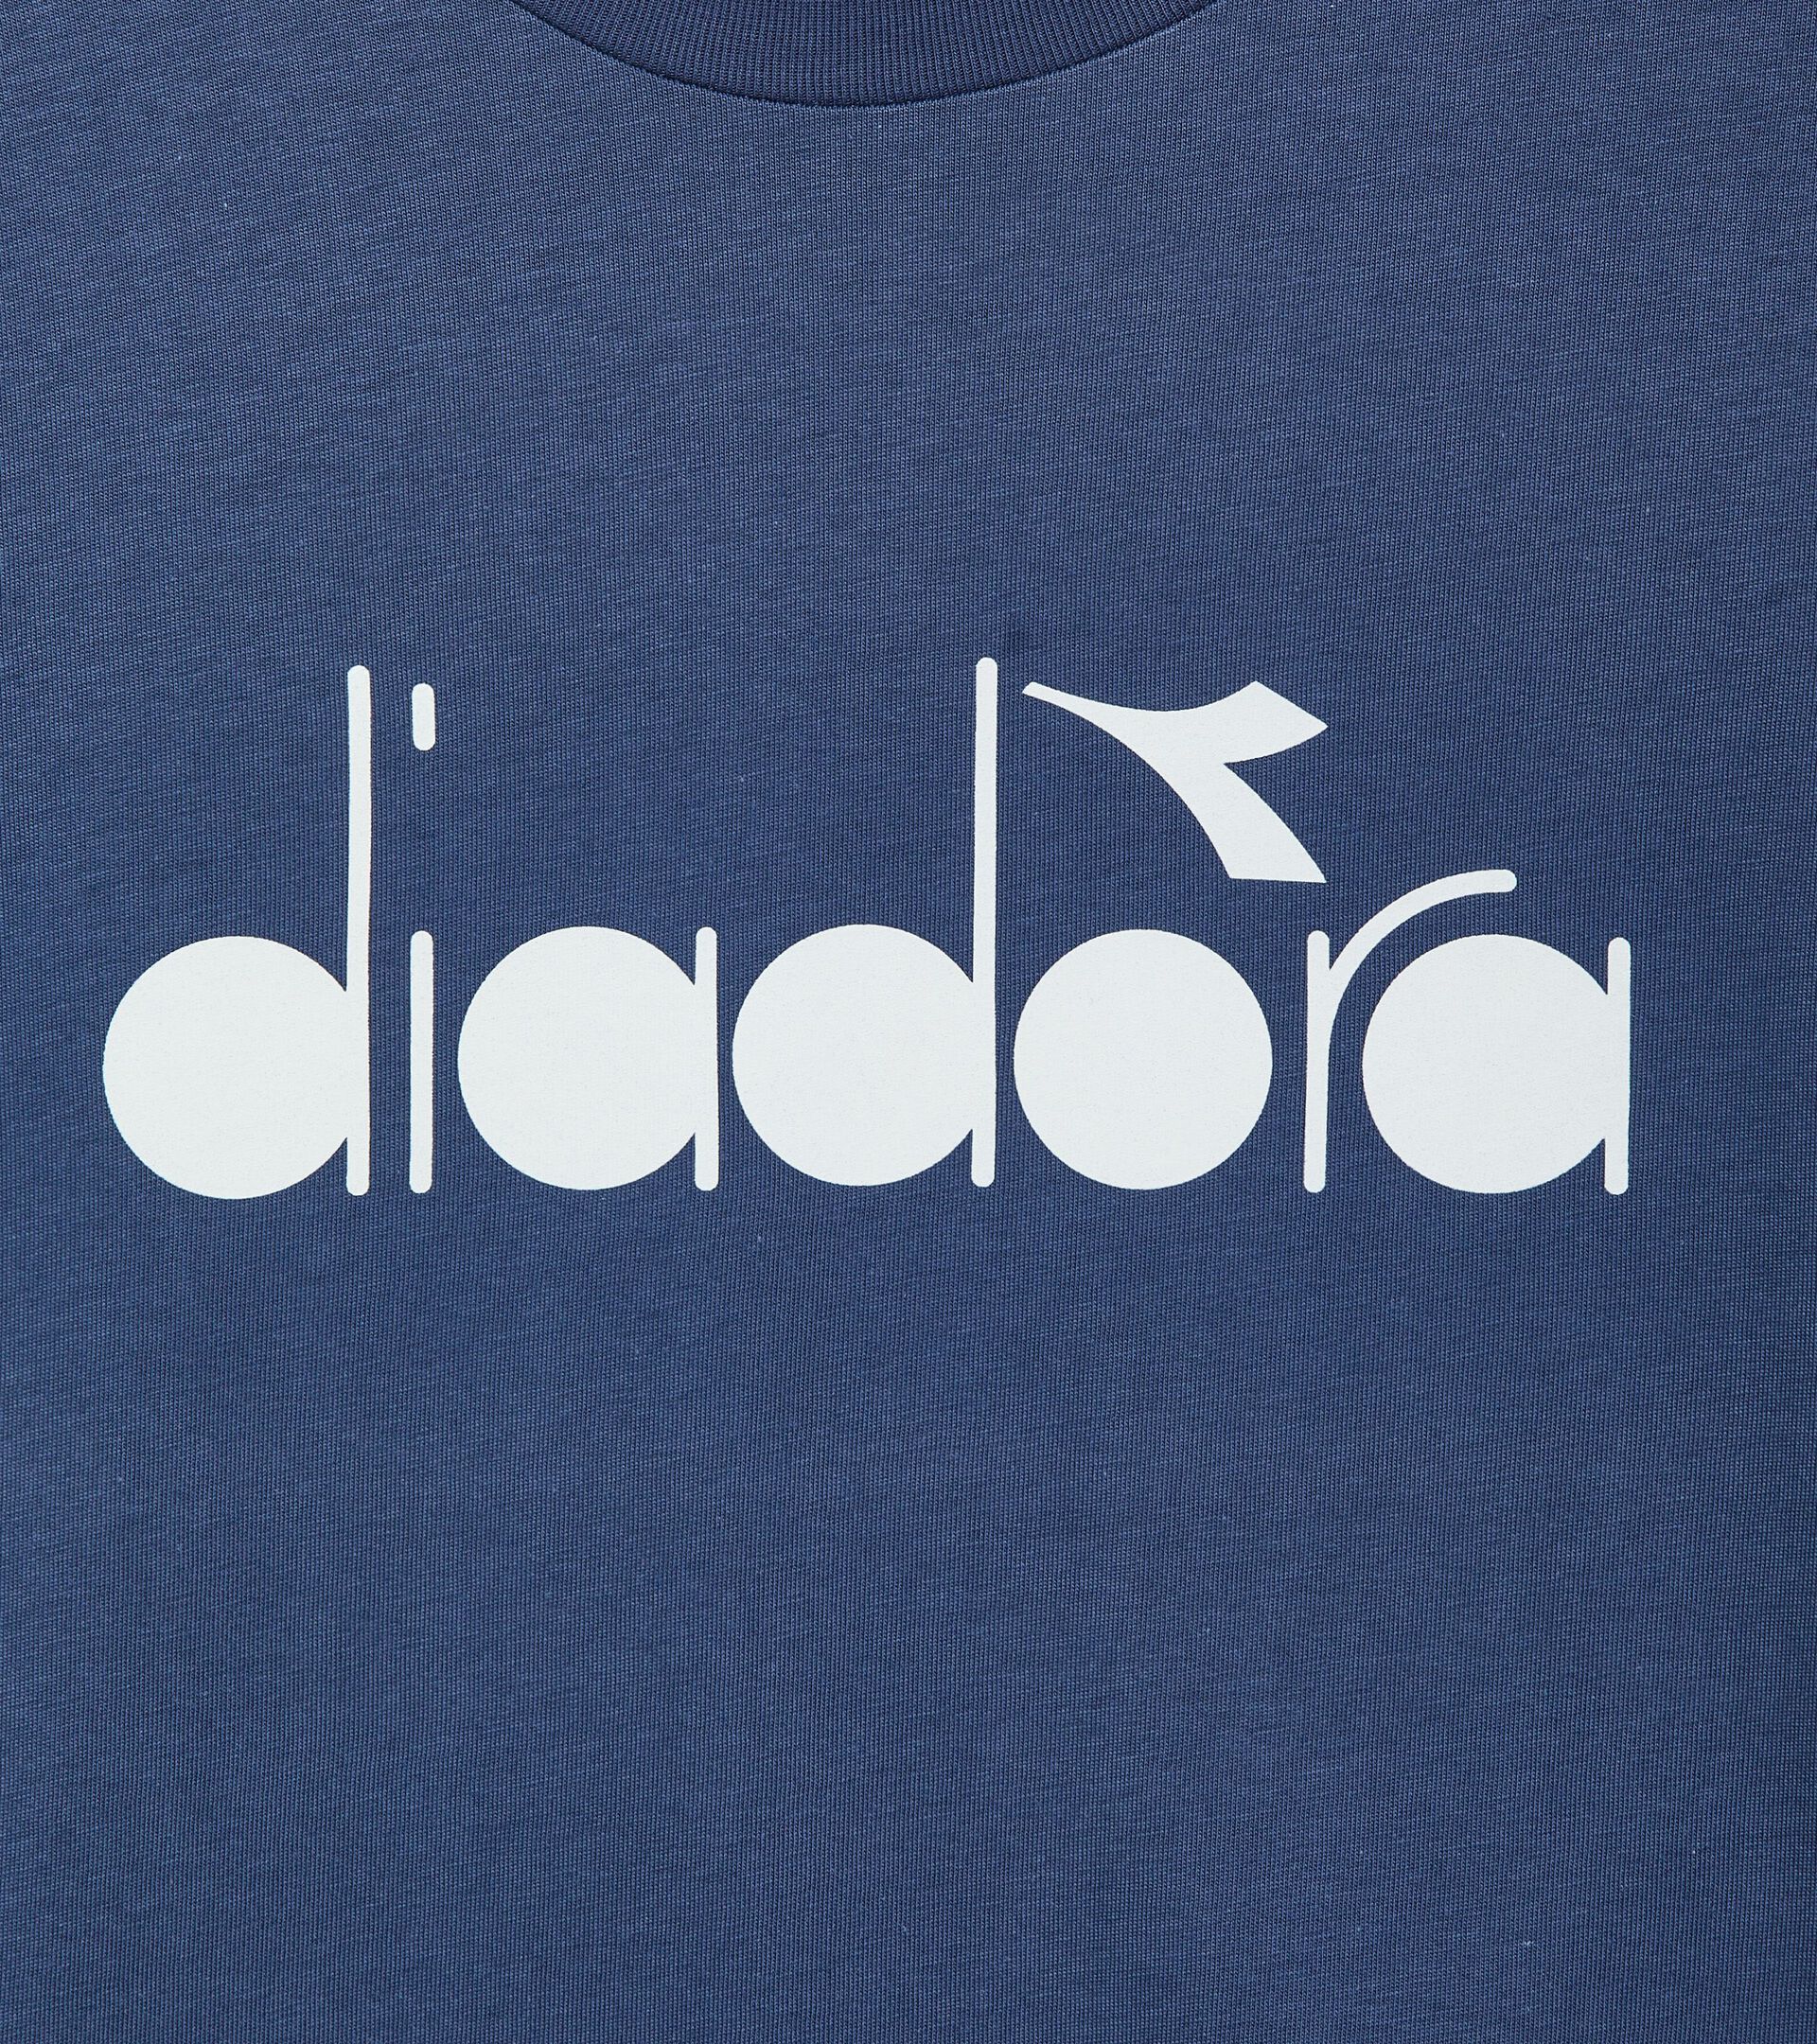 T-Shirt – Made in Italy - Gender Neutral  T-SHIRT SS LOGO OCEANA - Diadora